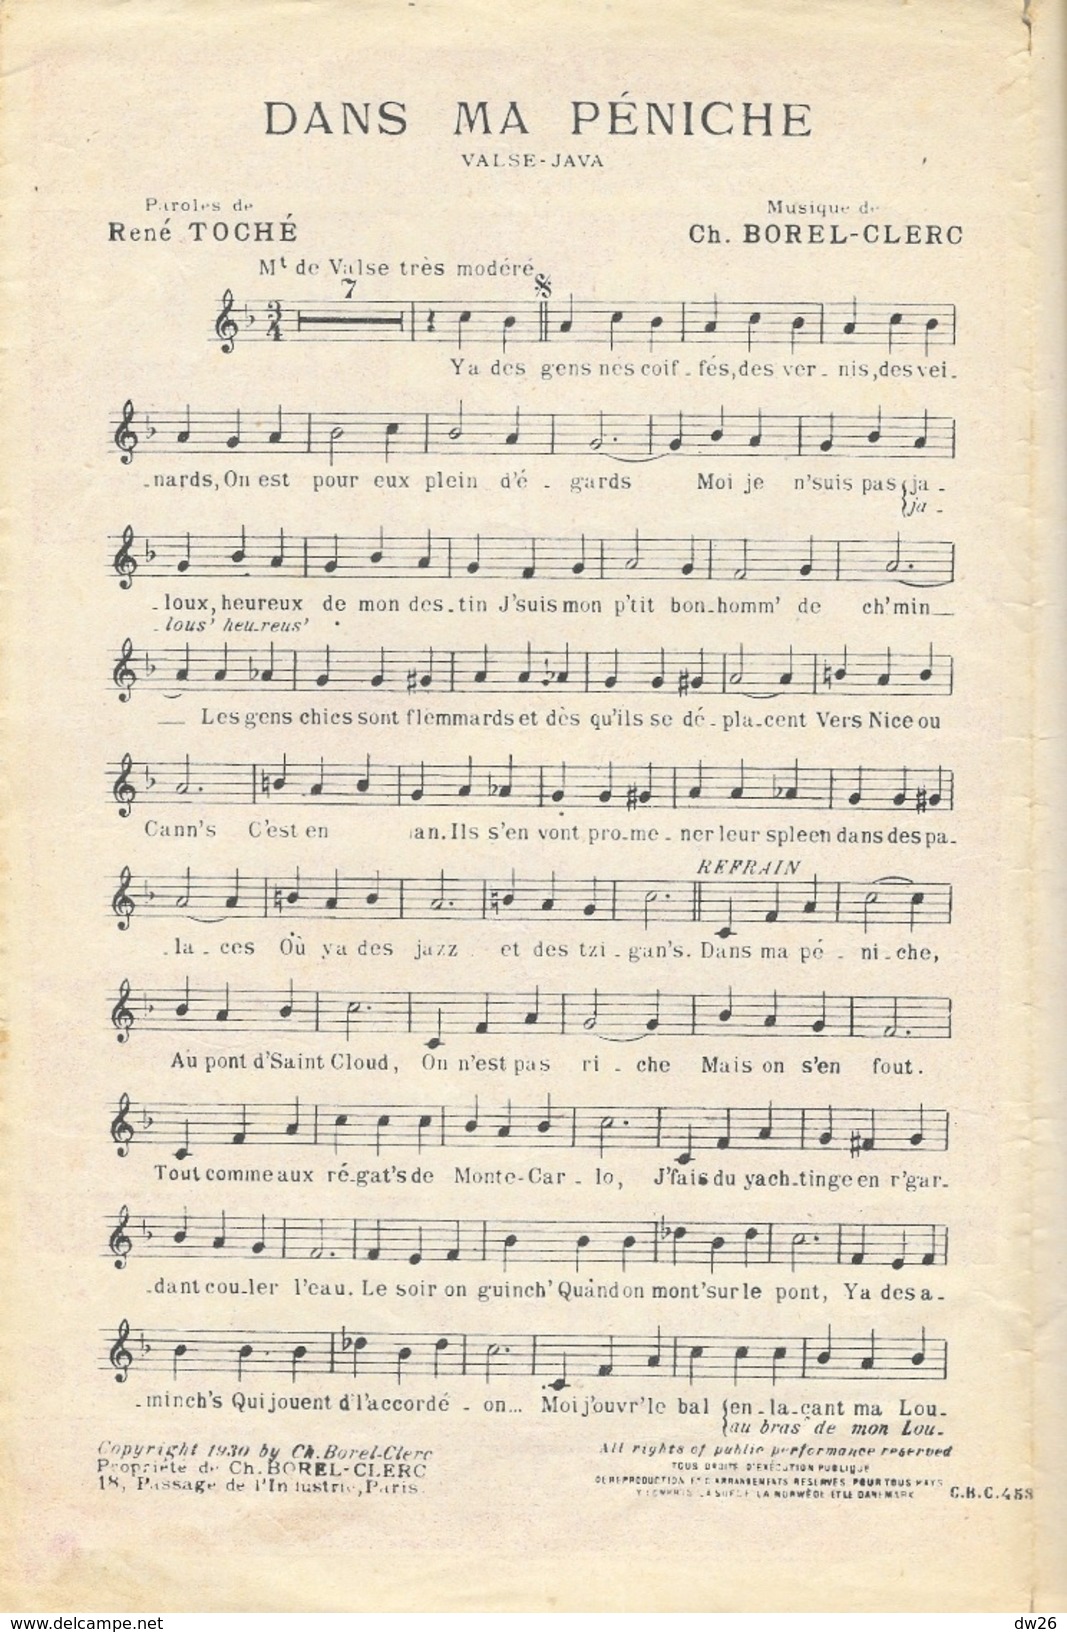 Partition: Dans Ma Péniche (Valse Java), Grand Succès De Jean Cyrano - Paroles De René Toche - Musique Ch. Borel-Clerc - Noten & Partituren